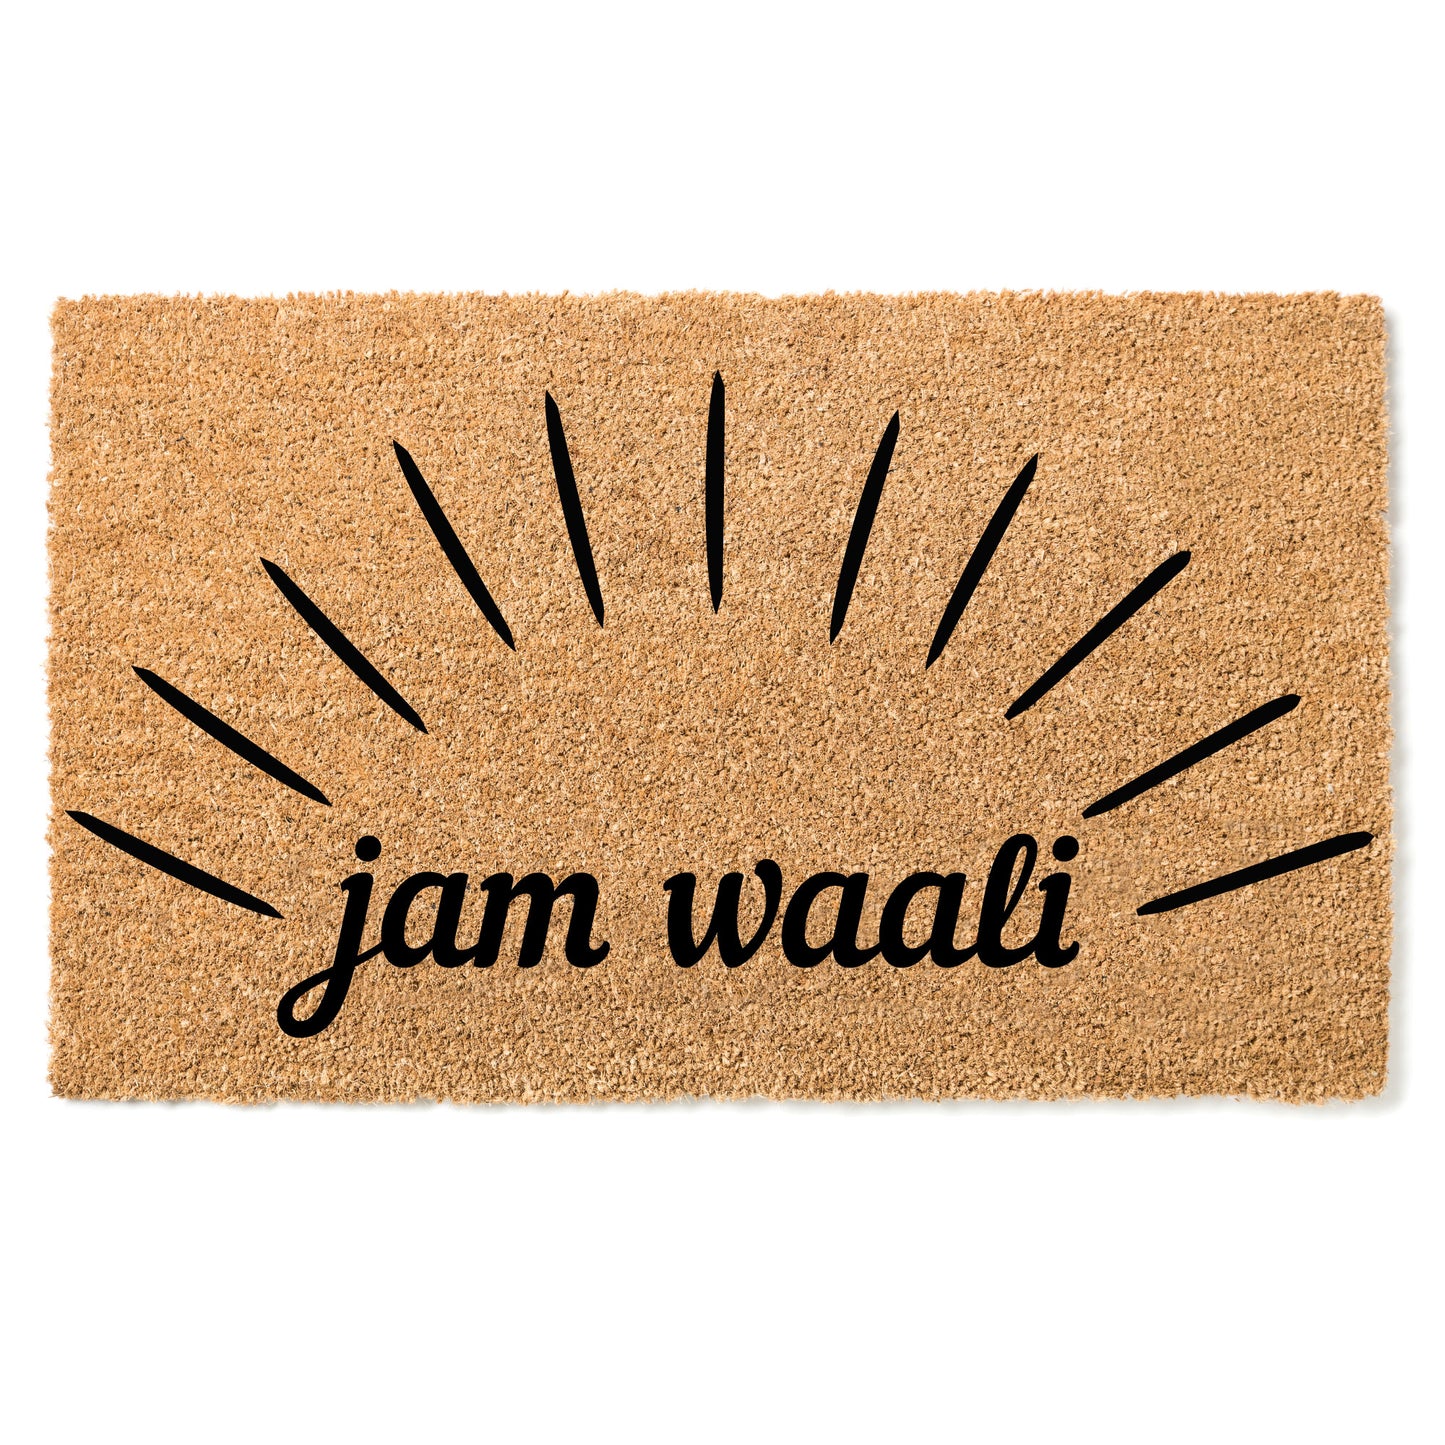 Paillasson Jam waali - "Bonjour" en Pulaar (Peul, Fulani, Fulfulde)